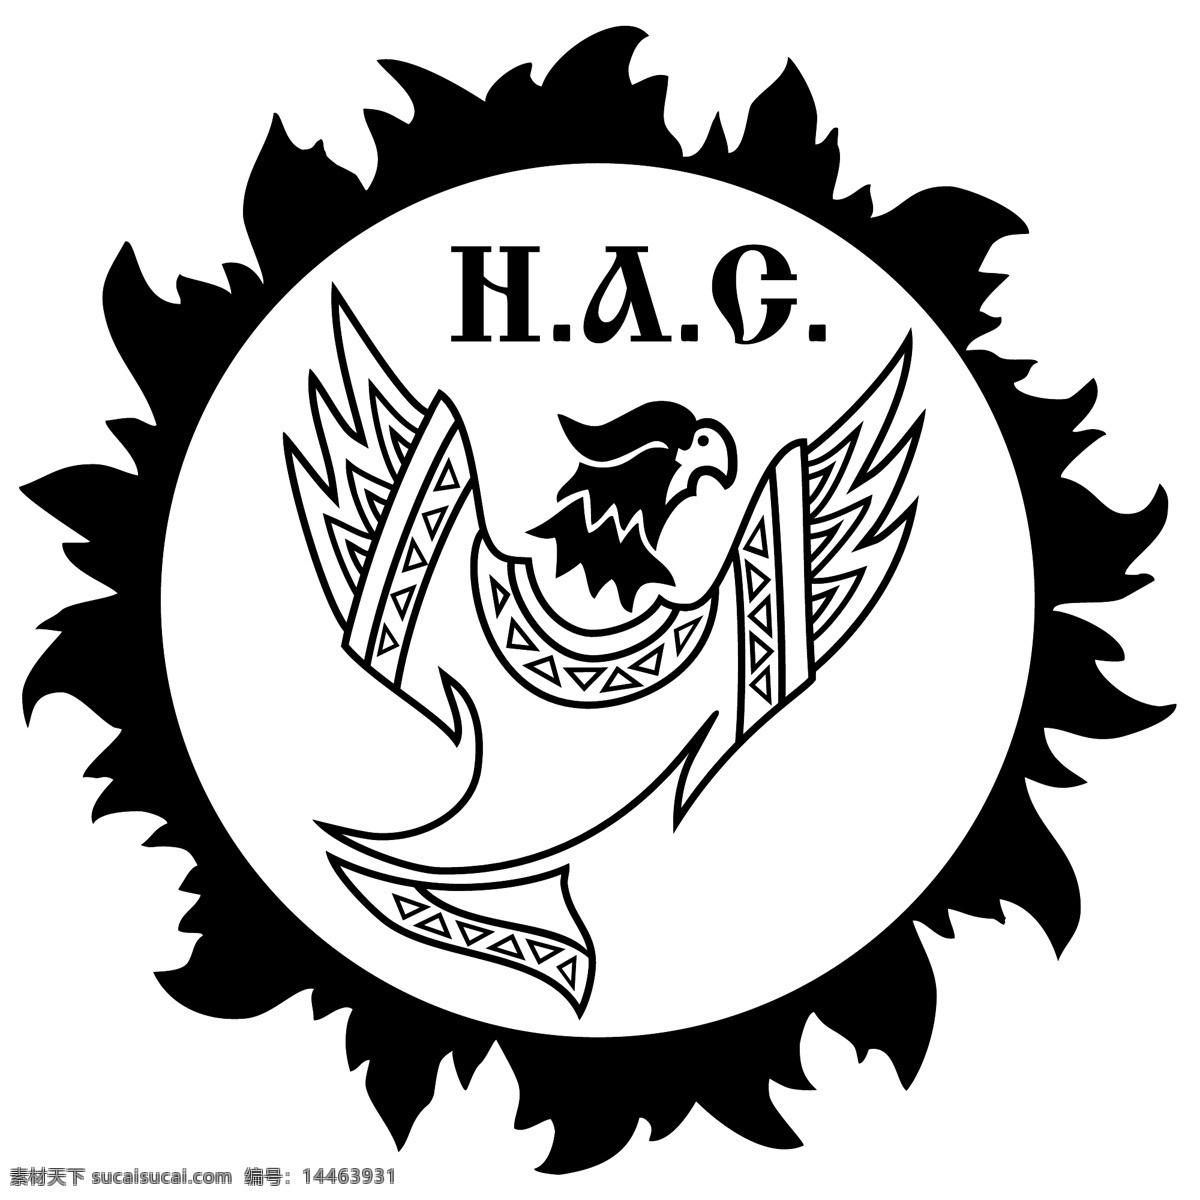 雄鹰 logo 黑色 太阳 logo设计 英文 白色